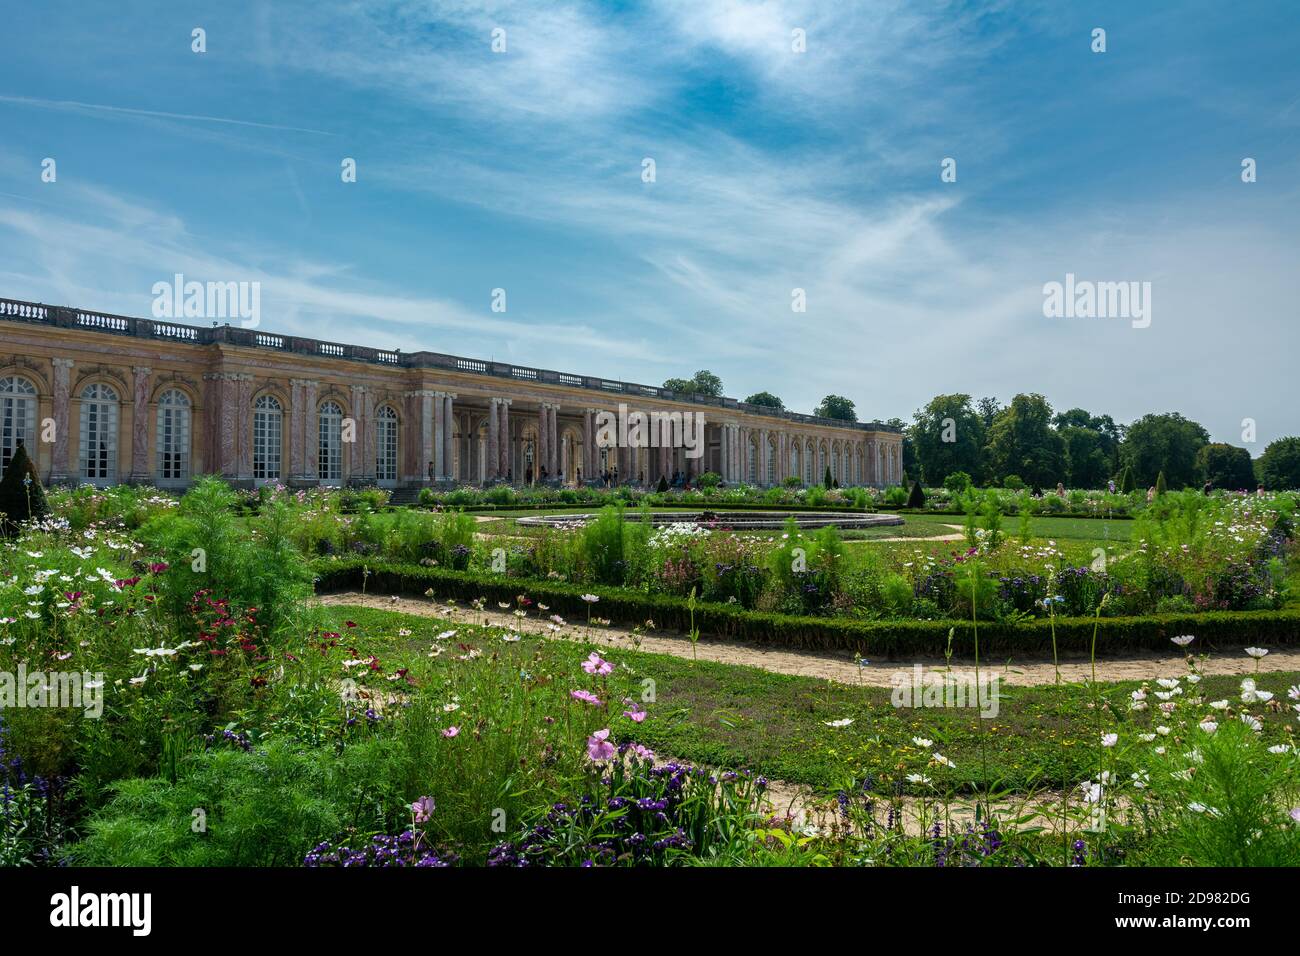 Versailles, Francia - 28 agosto 2019 : splendida vista panoramica del cortile in ciottoli e del colonnato riparato che collega le due ali del Th Foto Stock